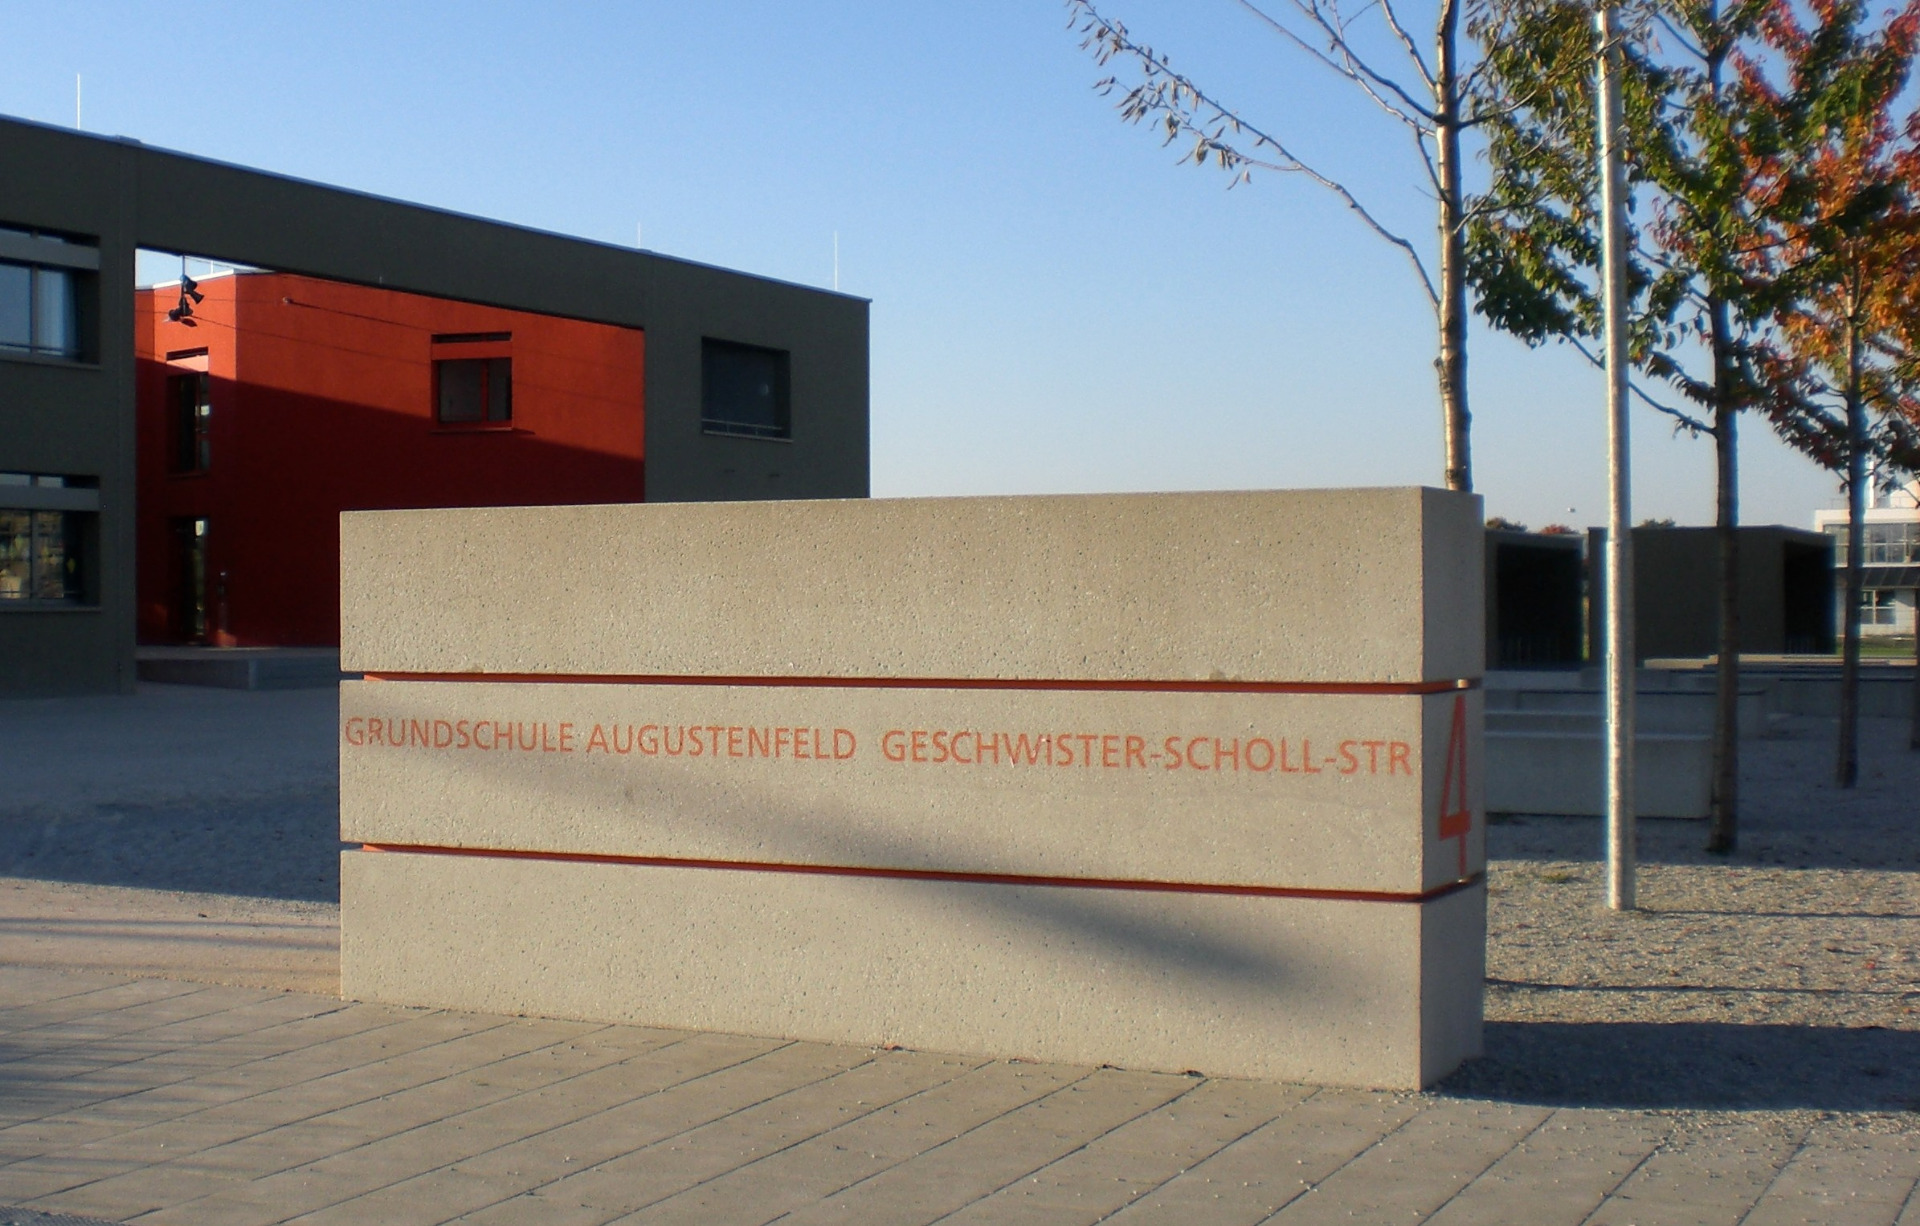 Grundschule Augustenfeld, 2005